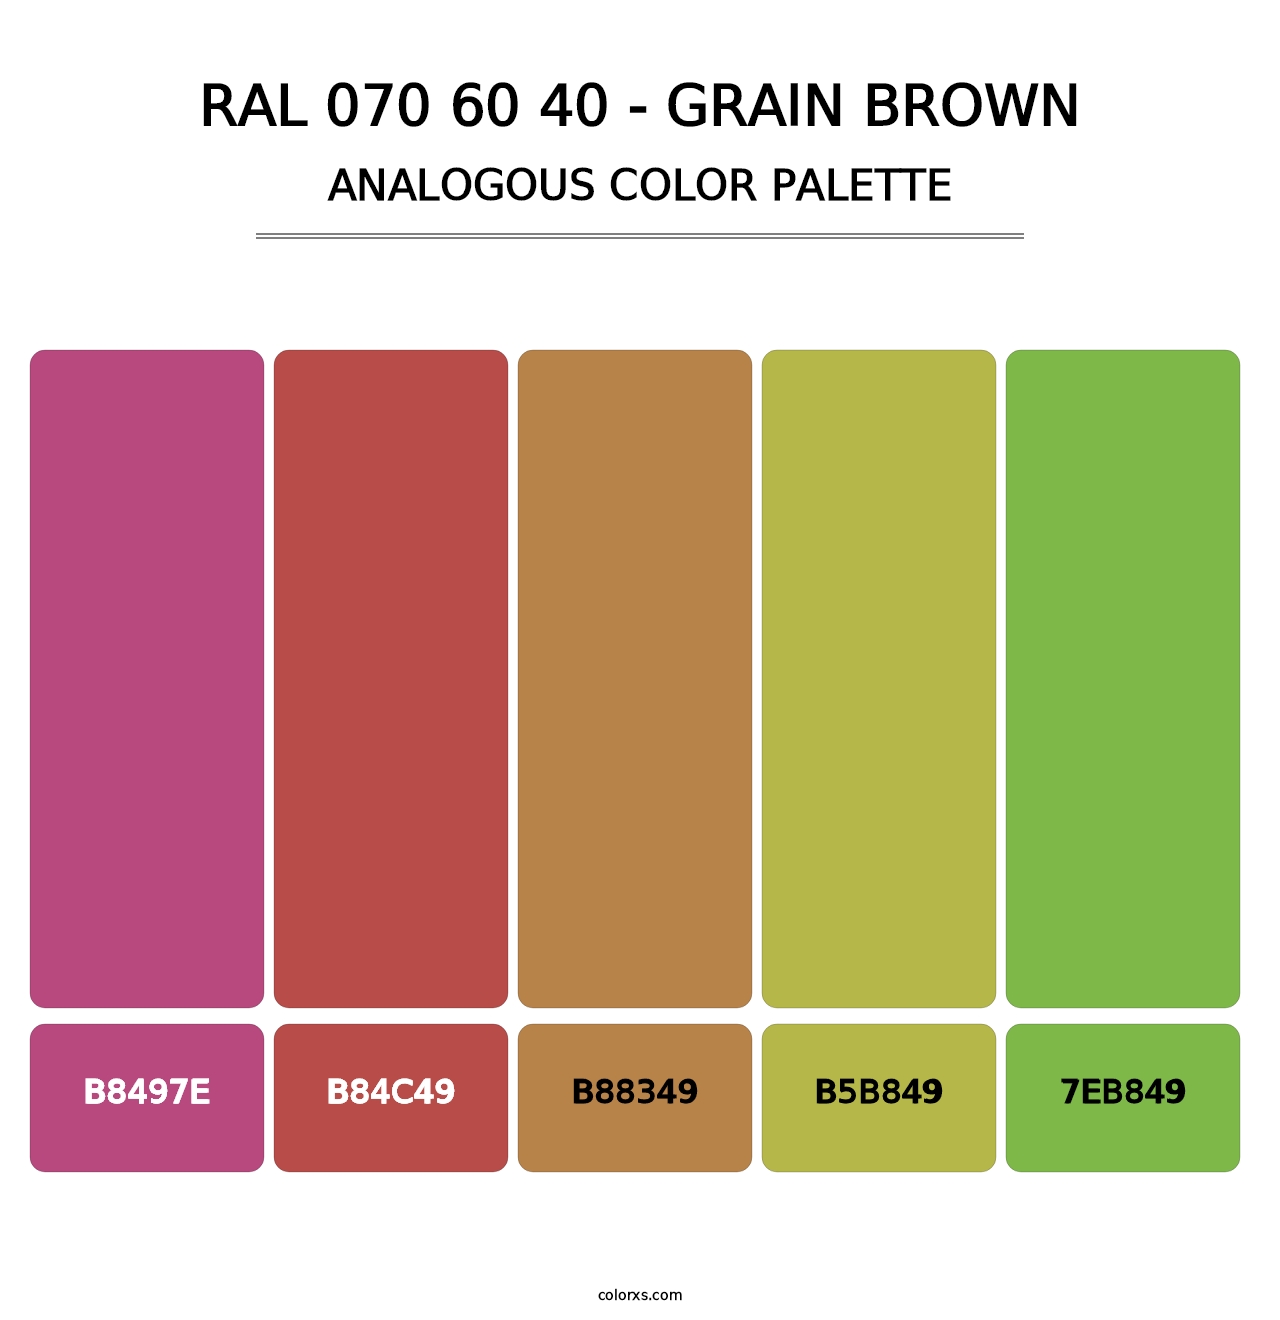 RAL 070 60 40 - Grain Brown - Analogous Color Palette